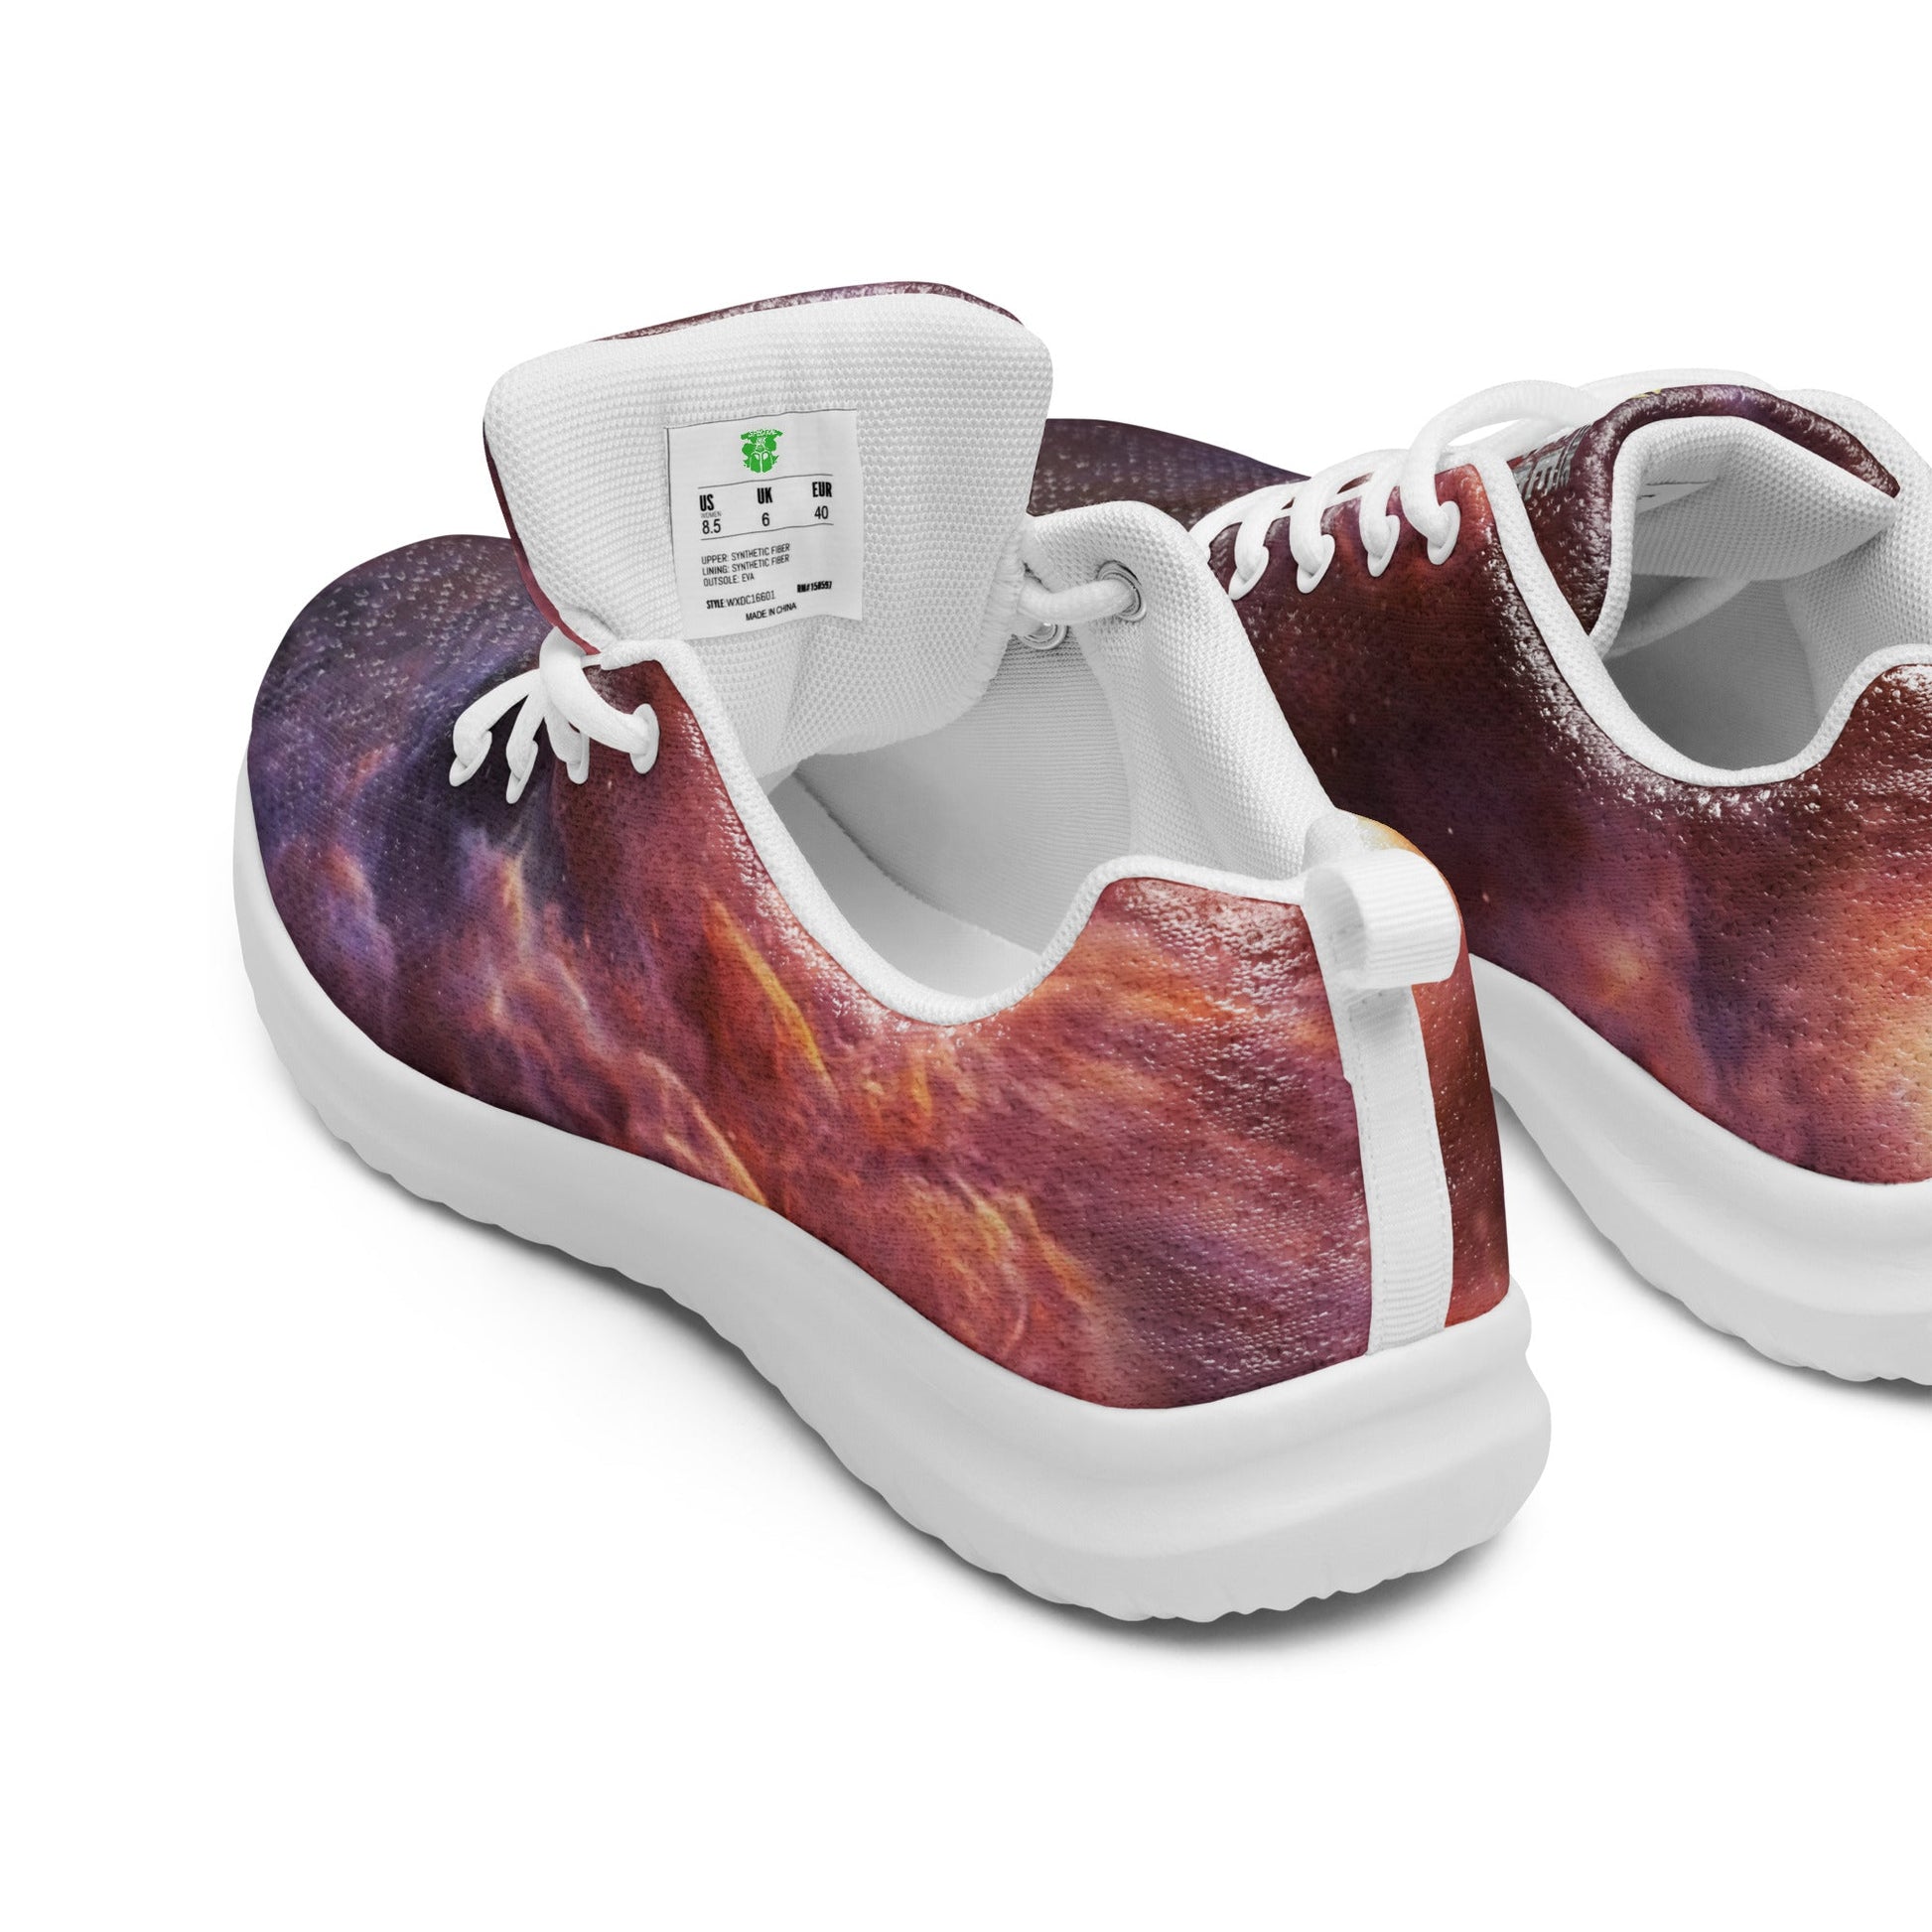 Men’s athletic shoes | Intergalactic Space Force 2 - Spectral Ink Shop - Shoes -6241389_16368